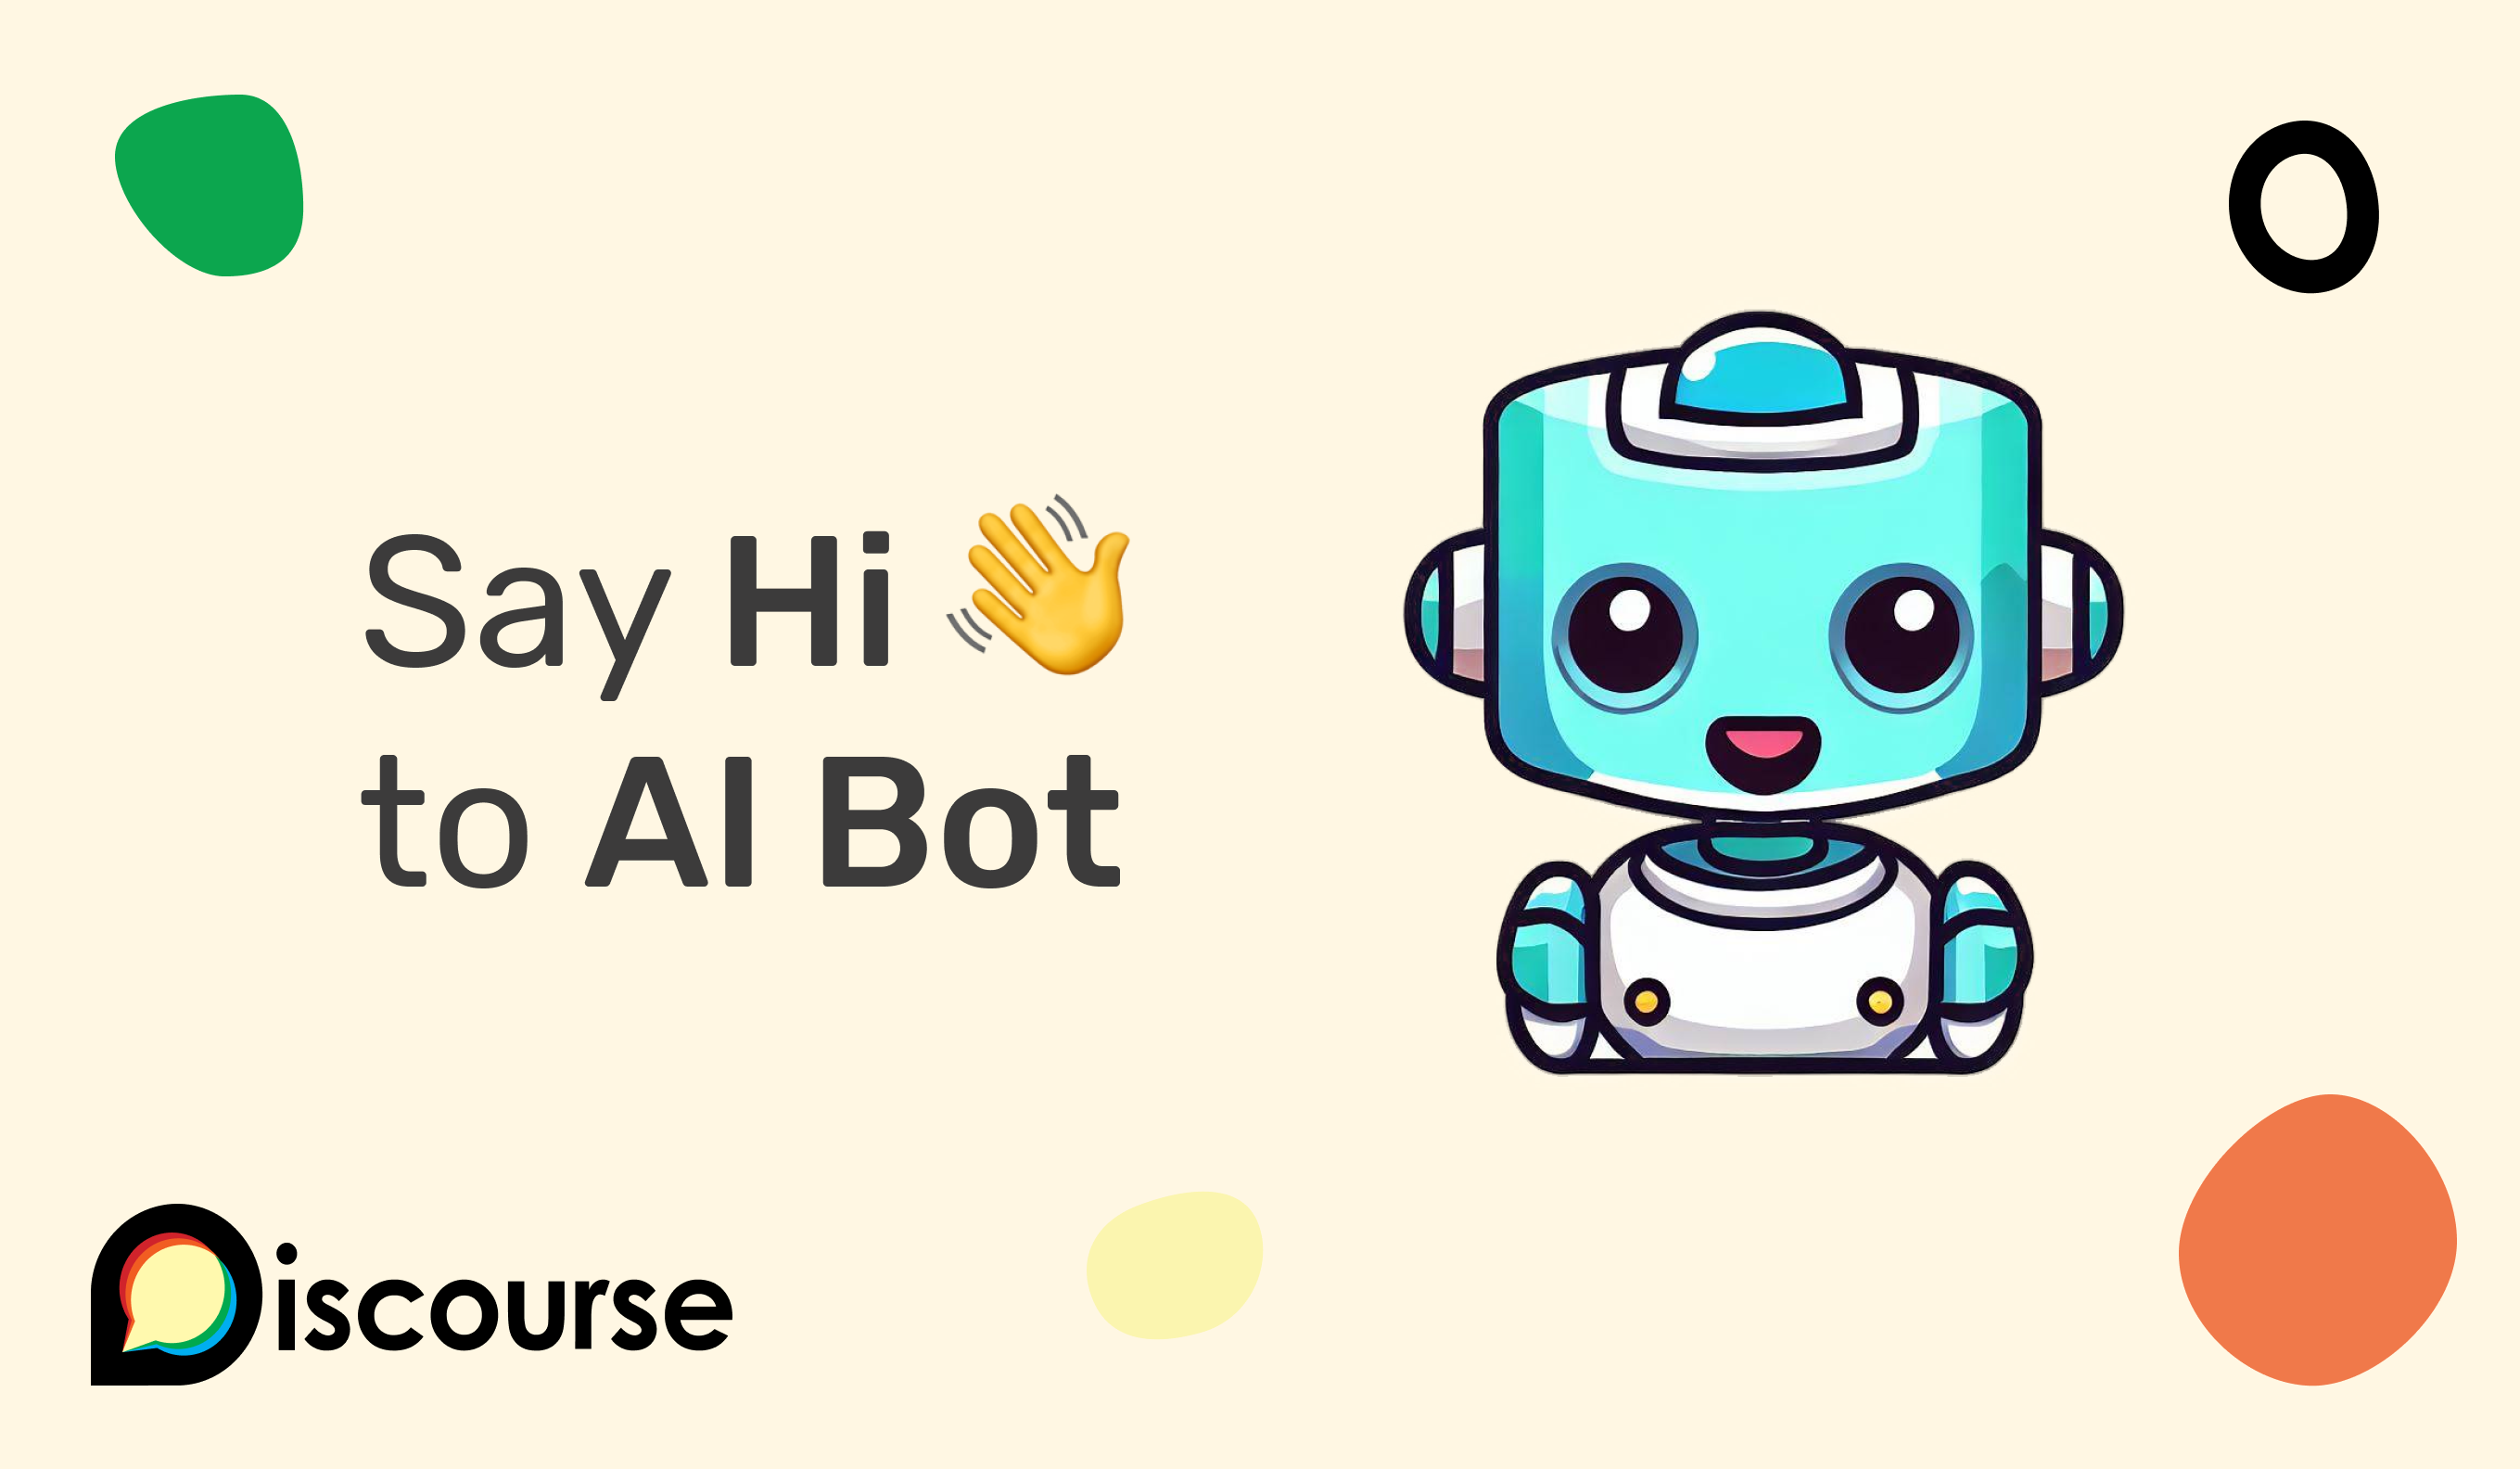 Introducing AI Bot